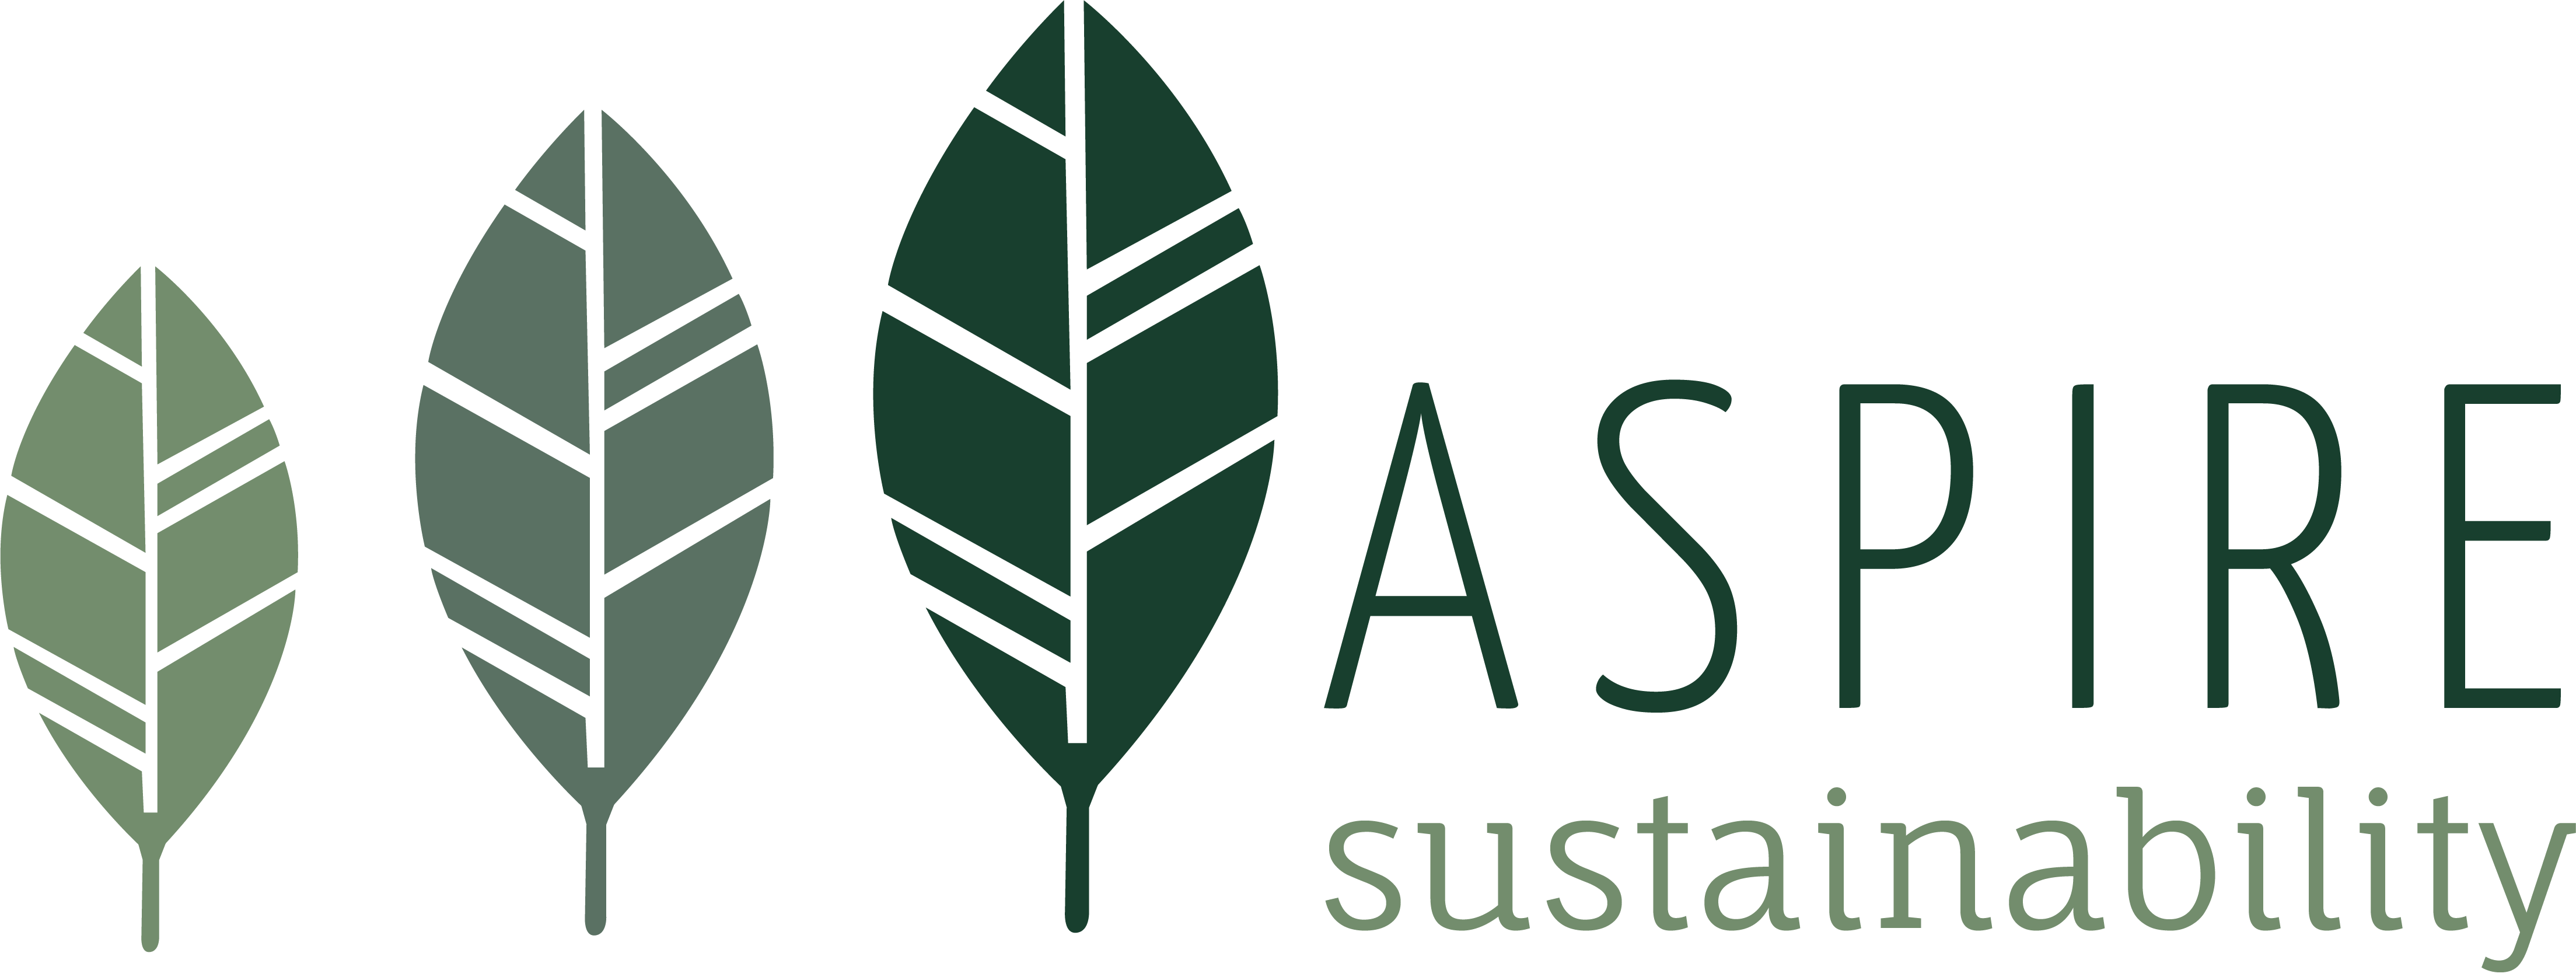 Sustainability Logo - Aspire Sustainability - Life Cycle Assessment and Sustainability ...